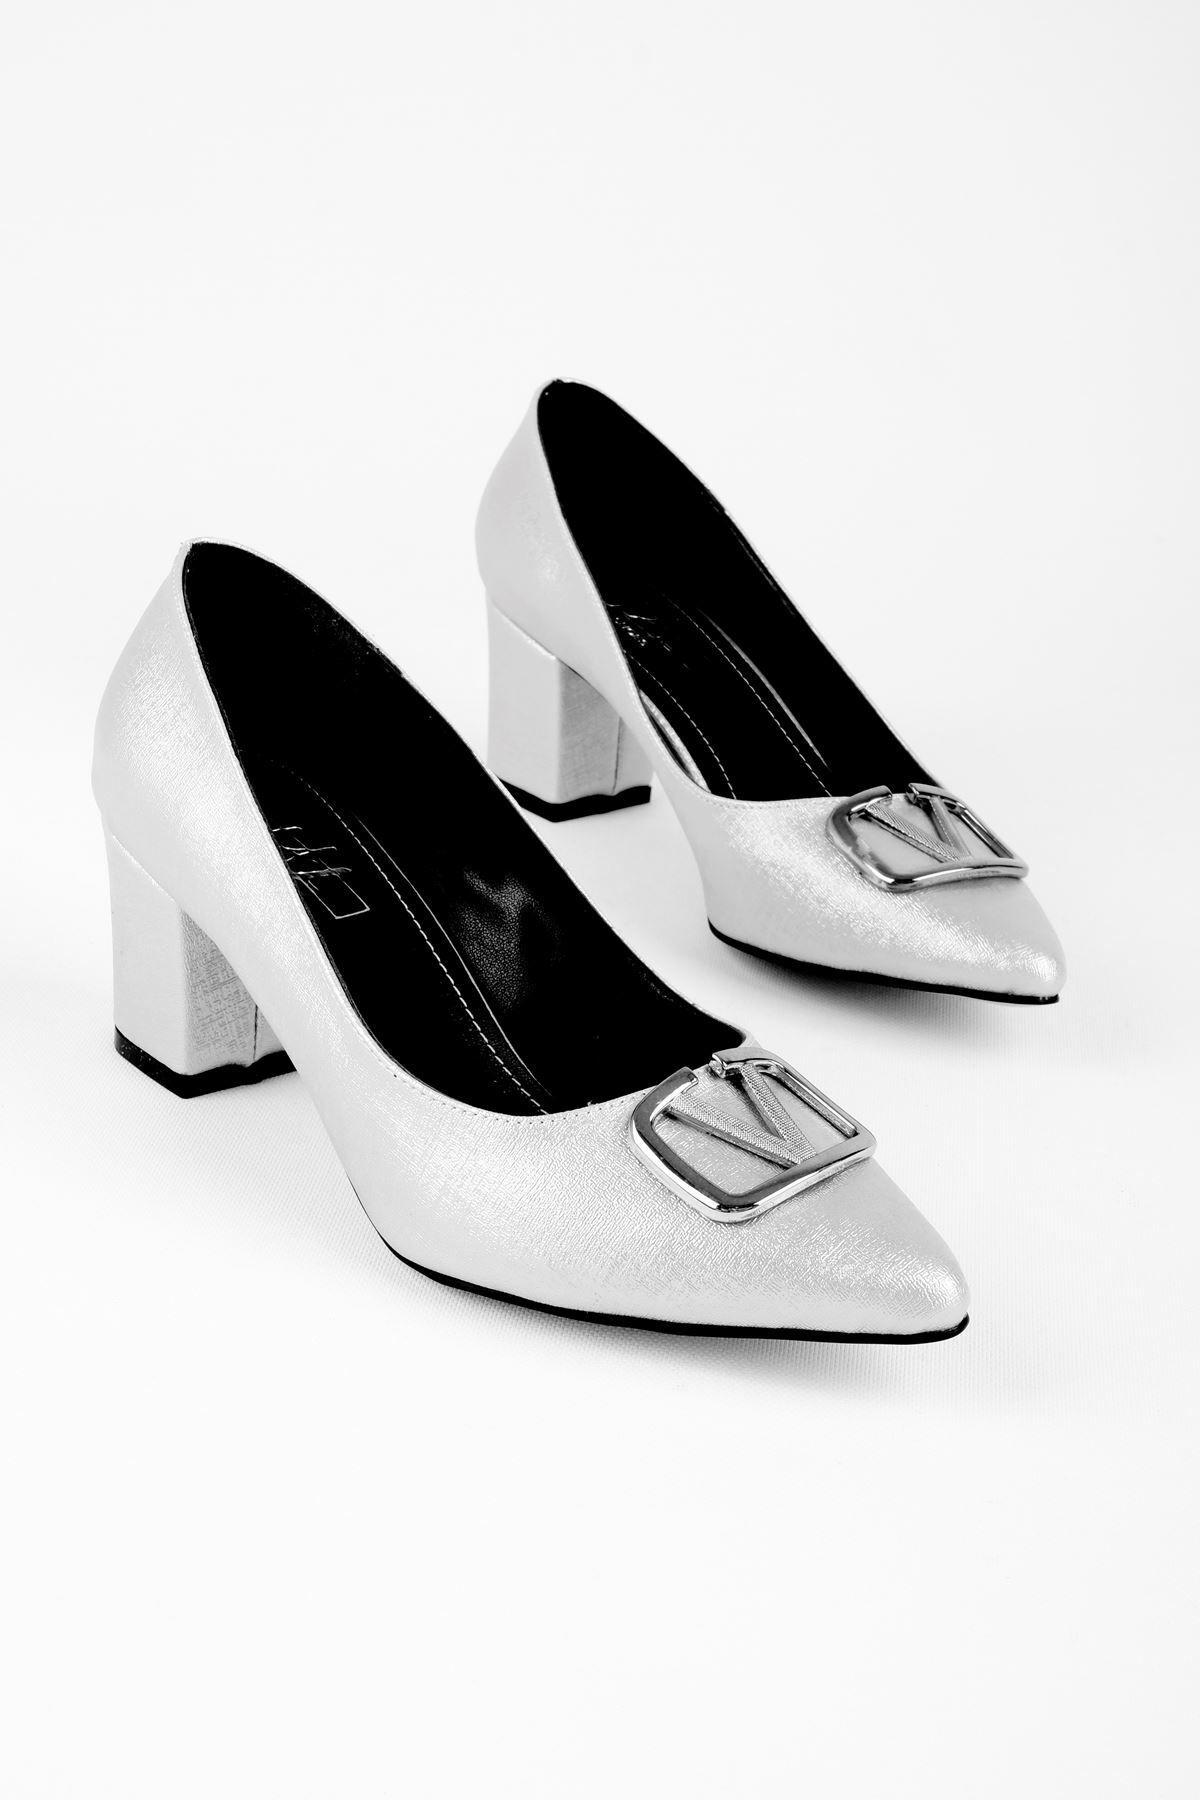 LAL SHOES & BAGS Daisy Kadın Topuklu Ayakkabı Metal V Detaylı-Açık Gri